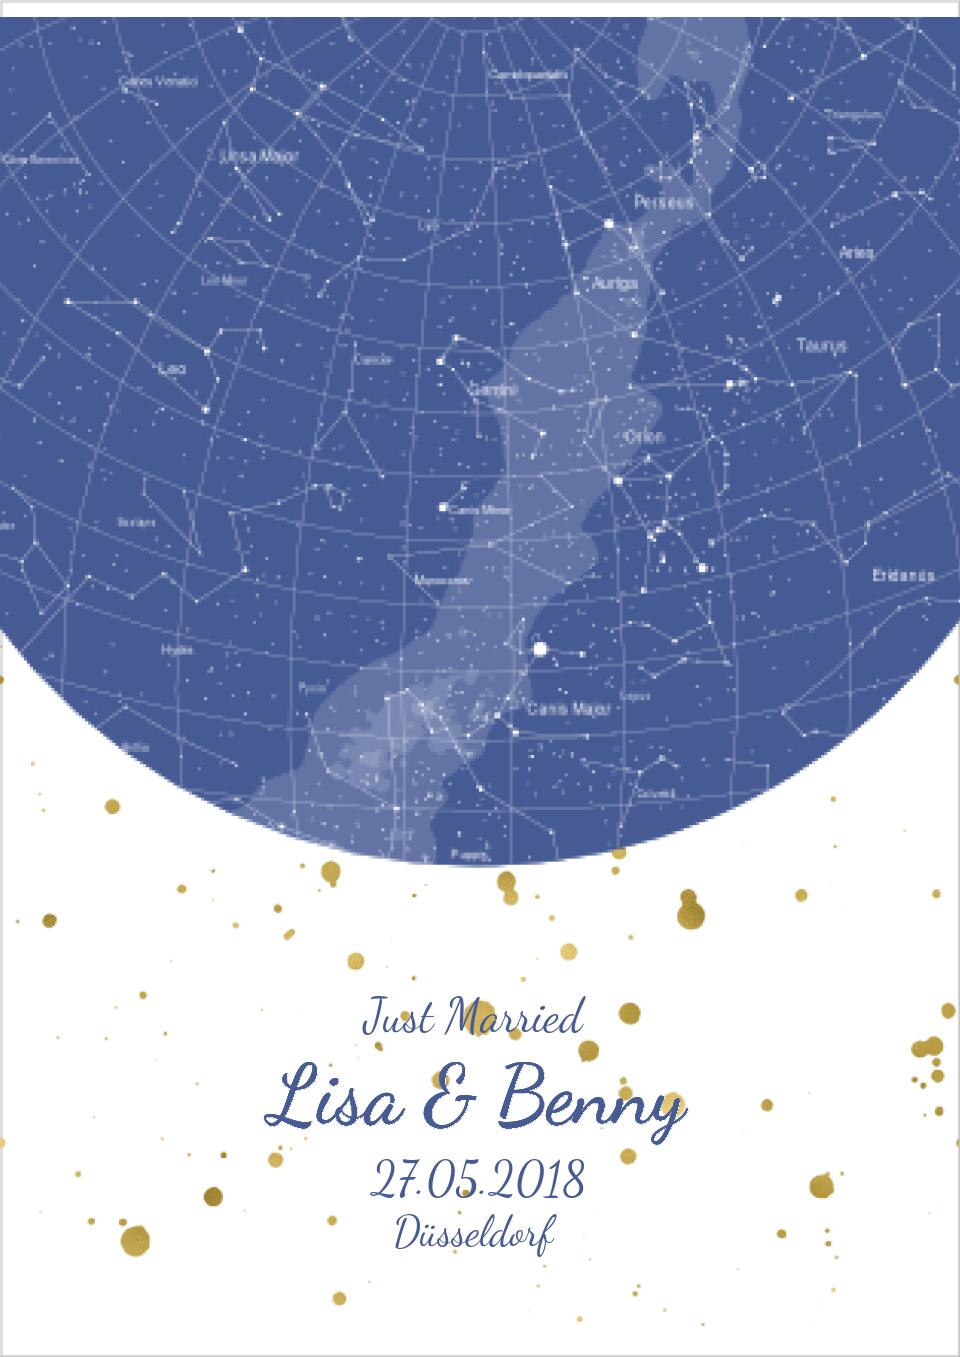 Hochzeitsgeschenk | Personalisierte Sternkarte |  Sternenhimmel Poster | Sternkarte Geschenk zur Hochzeit, zur Geburt, zur Taufe | Geschenk Brautpaar